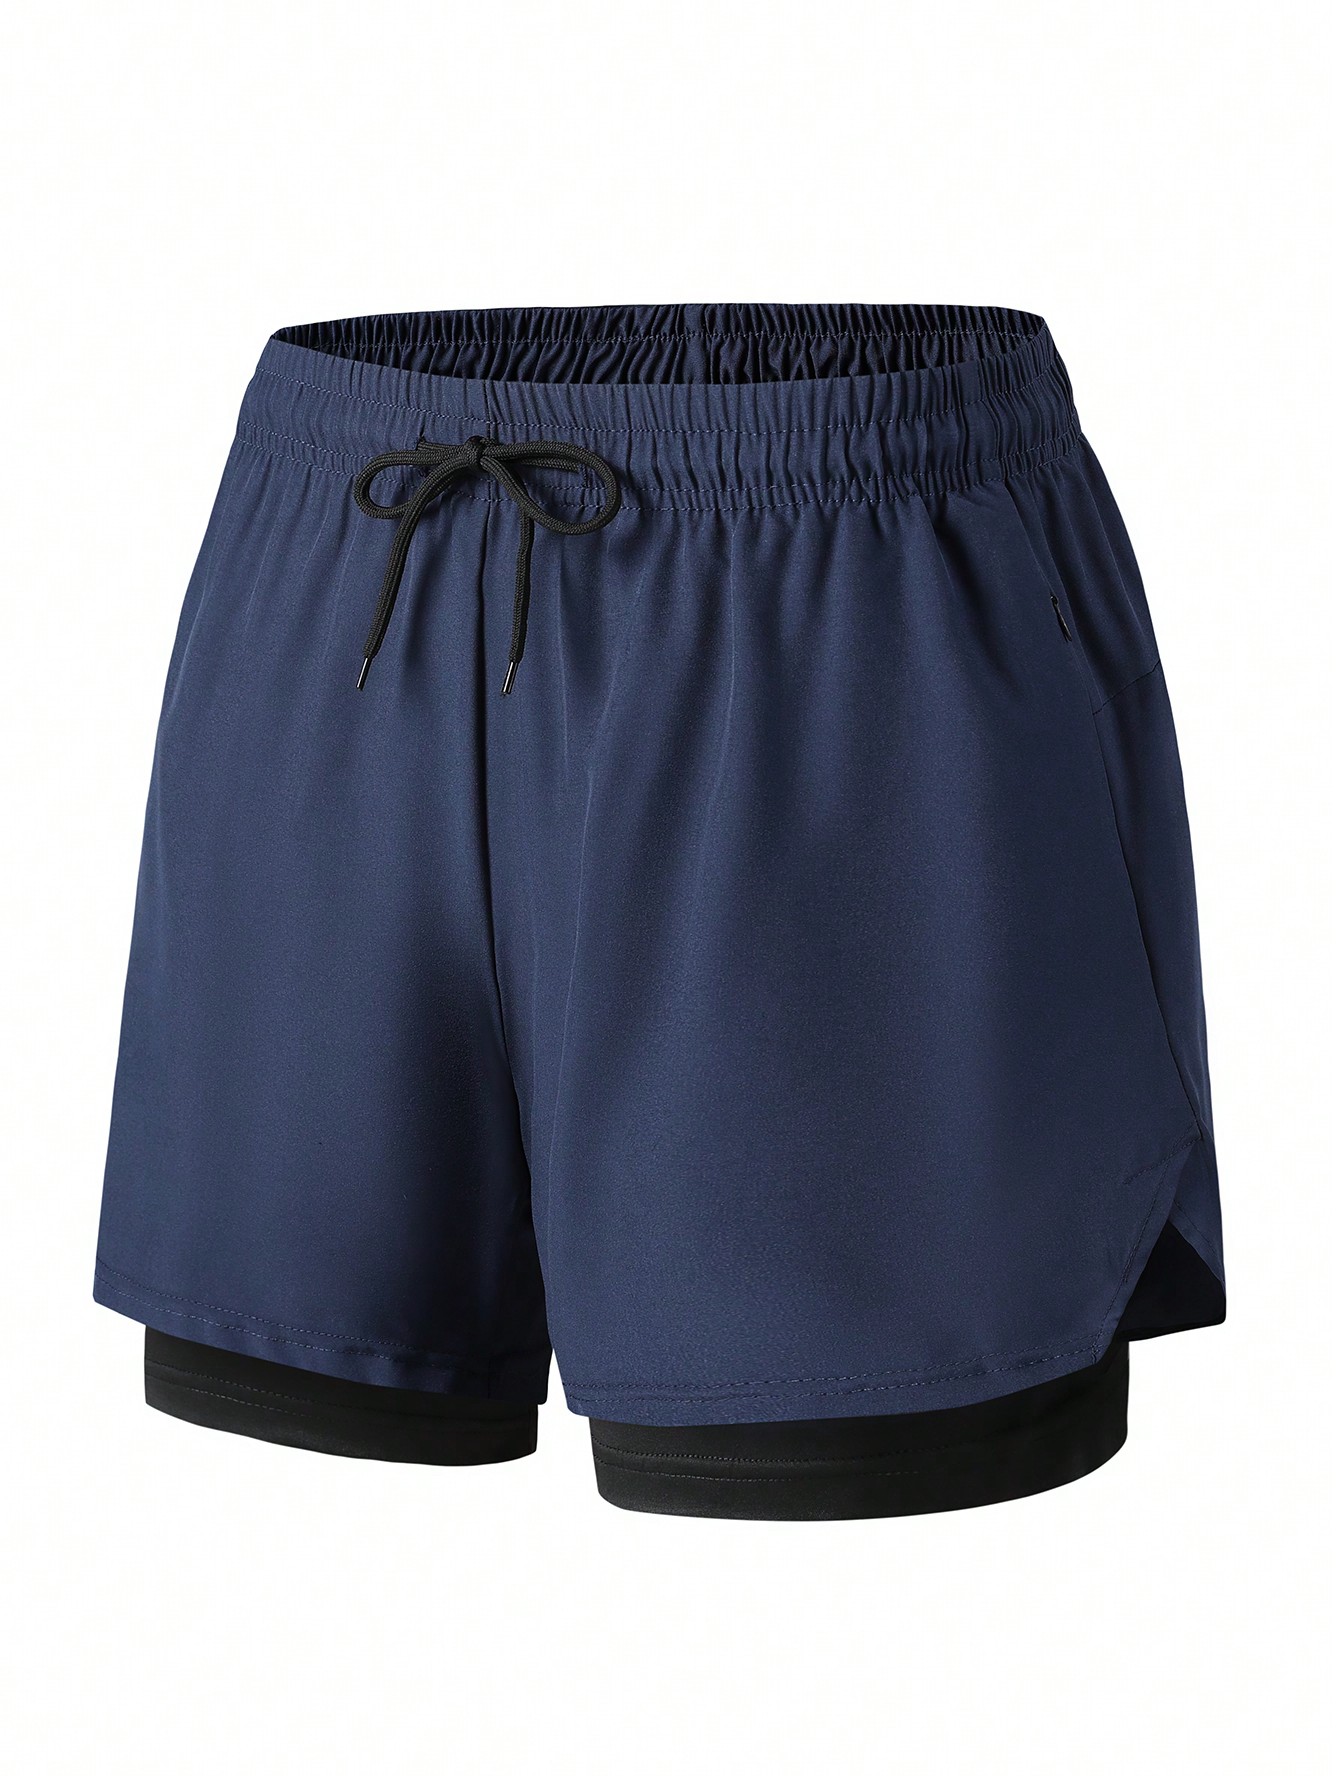 Эластичные, быстросохнущие мужские спортивные шорты со встроенными трусами, темно-синий